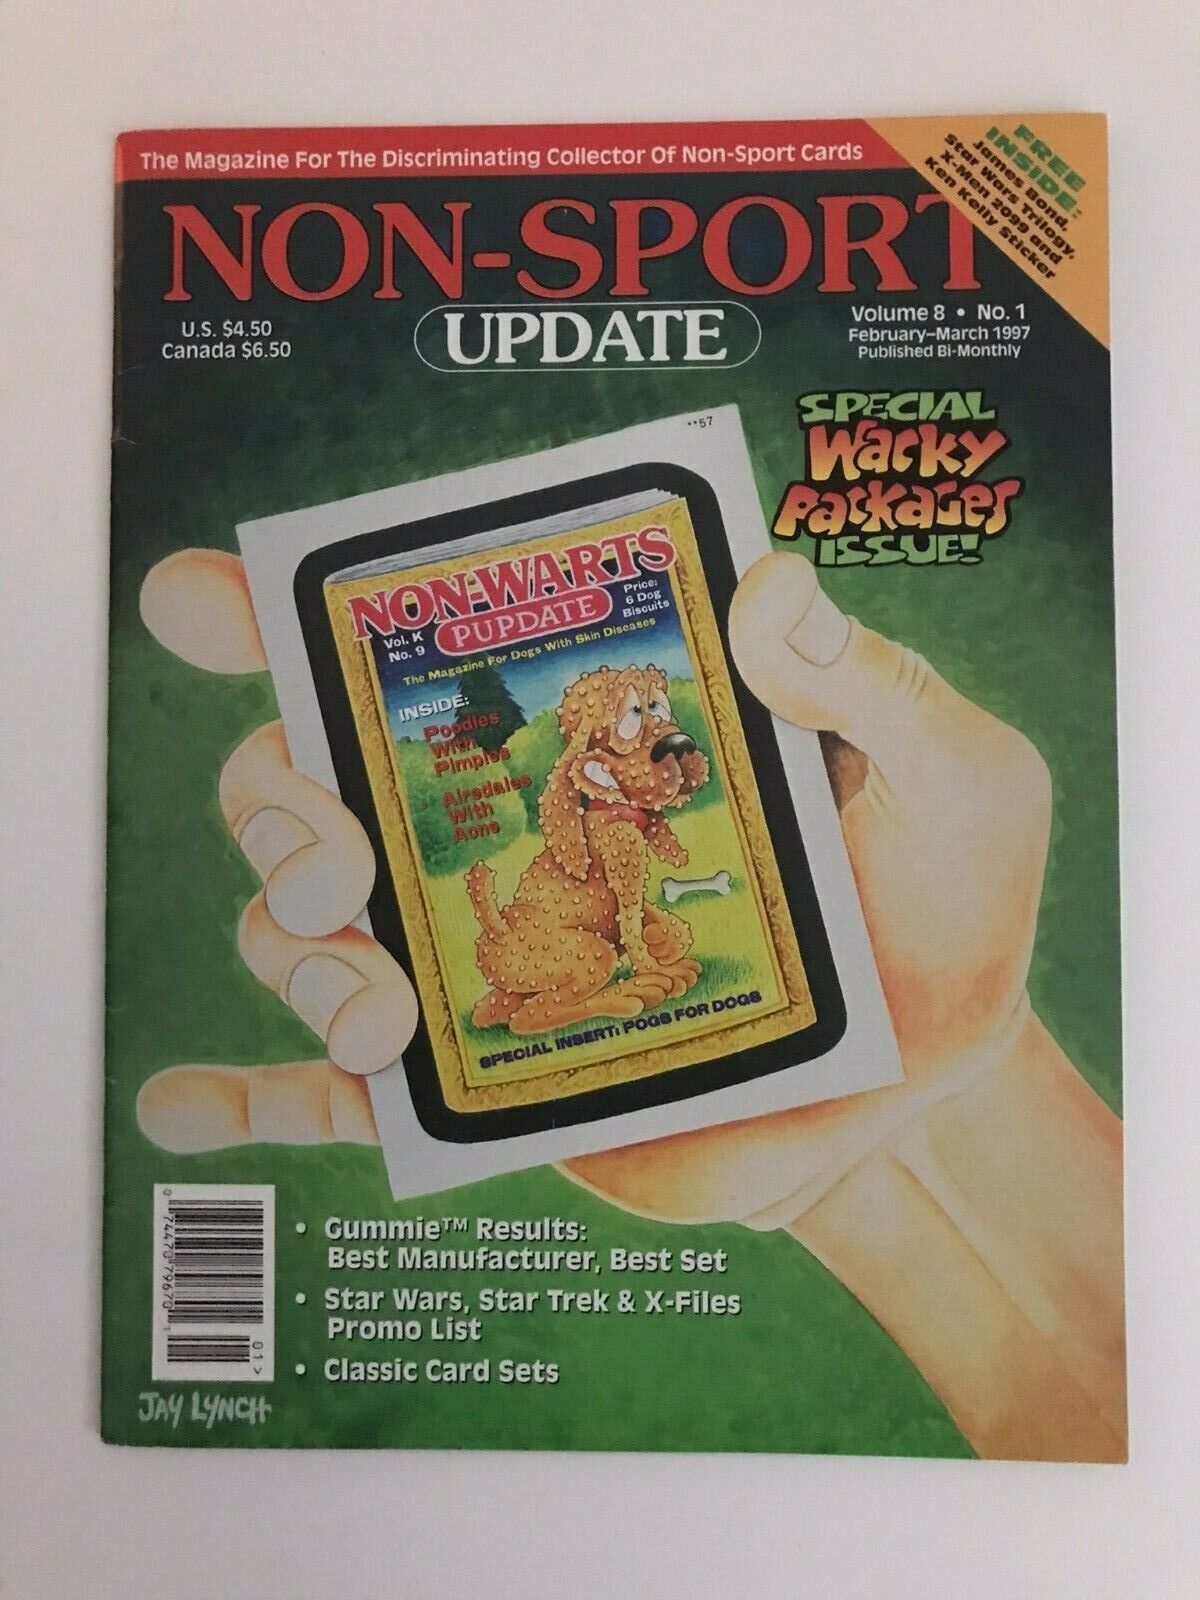 Non-sport Update: Non-sport Card Collector Magazine (vol. 8, #1; Feb/mar, 1997)